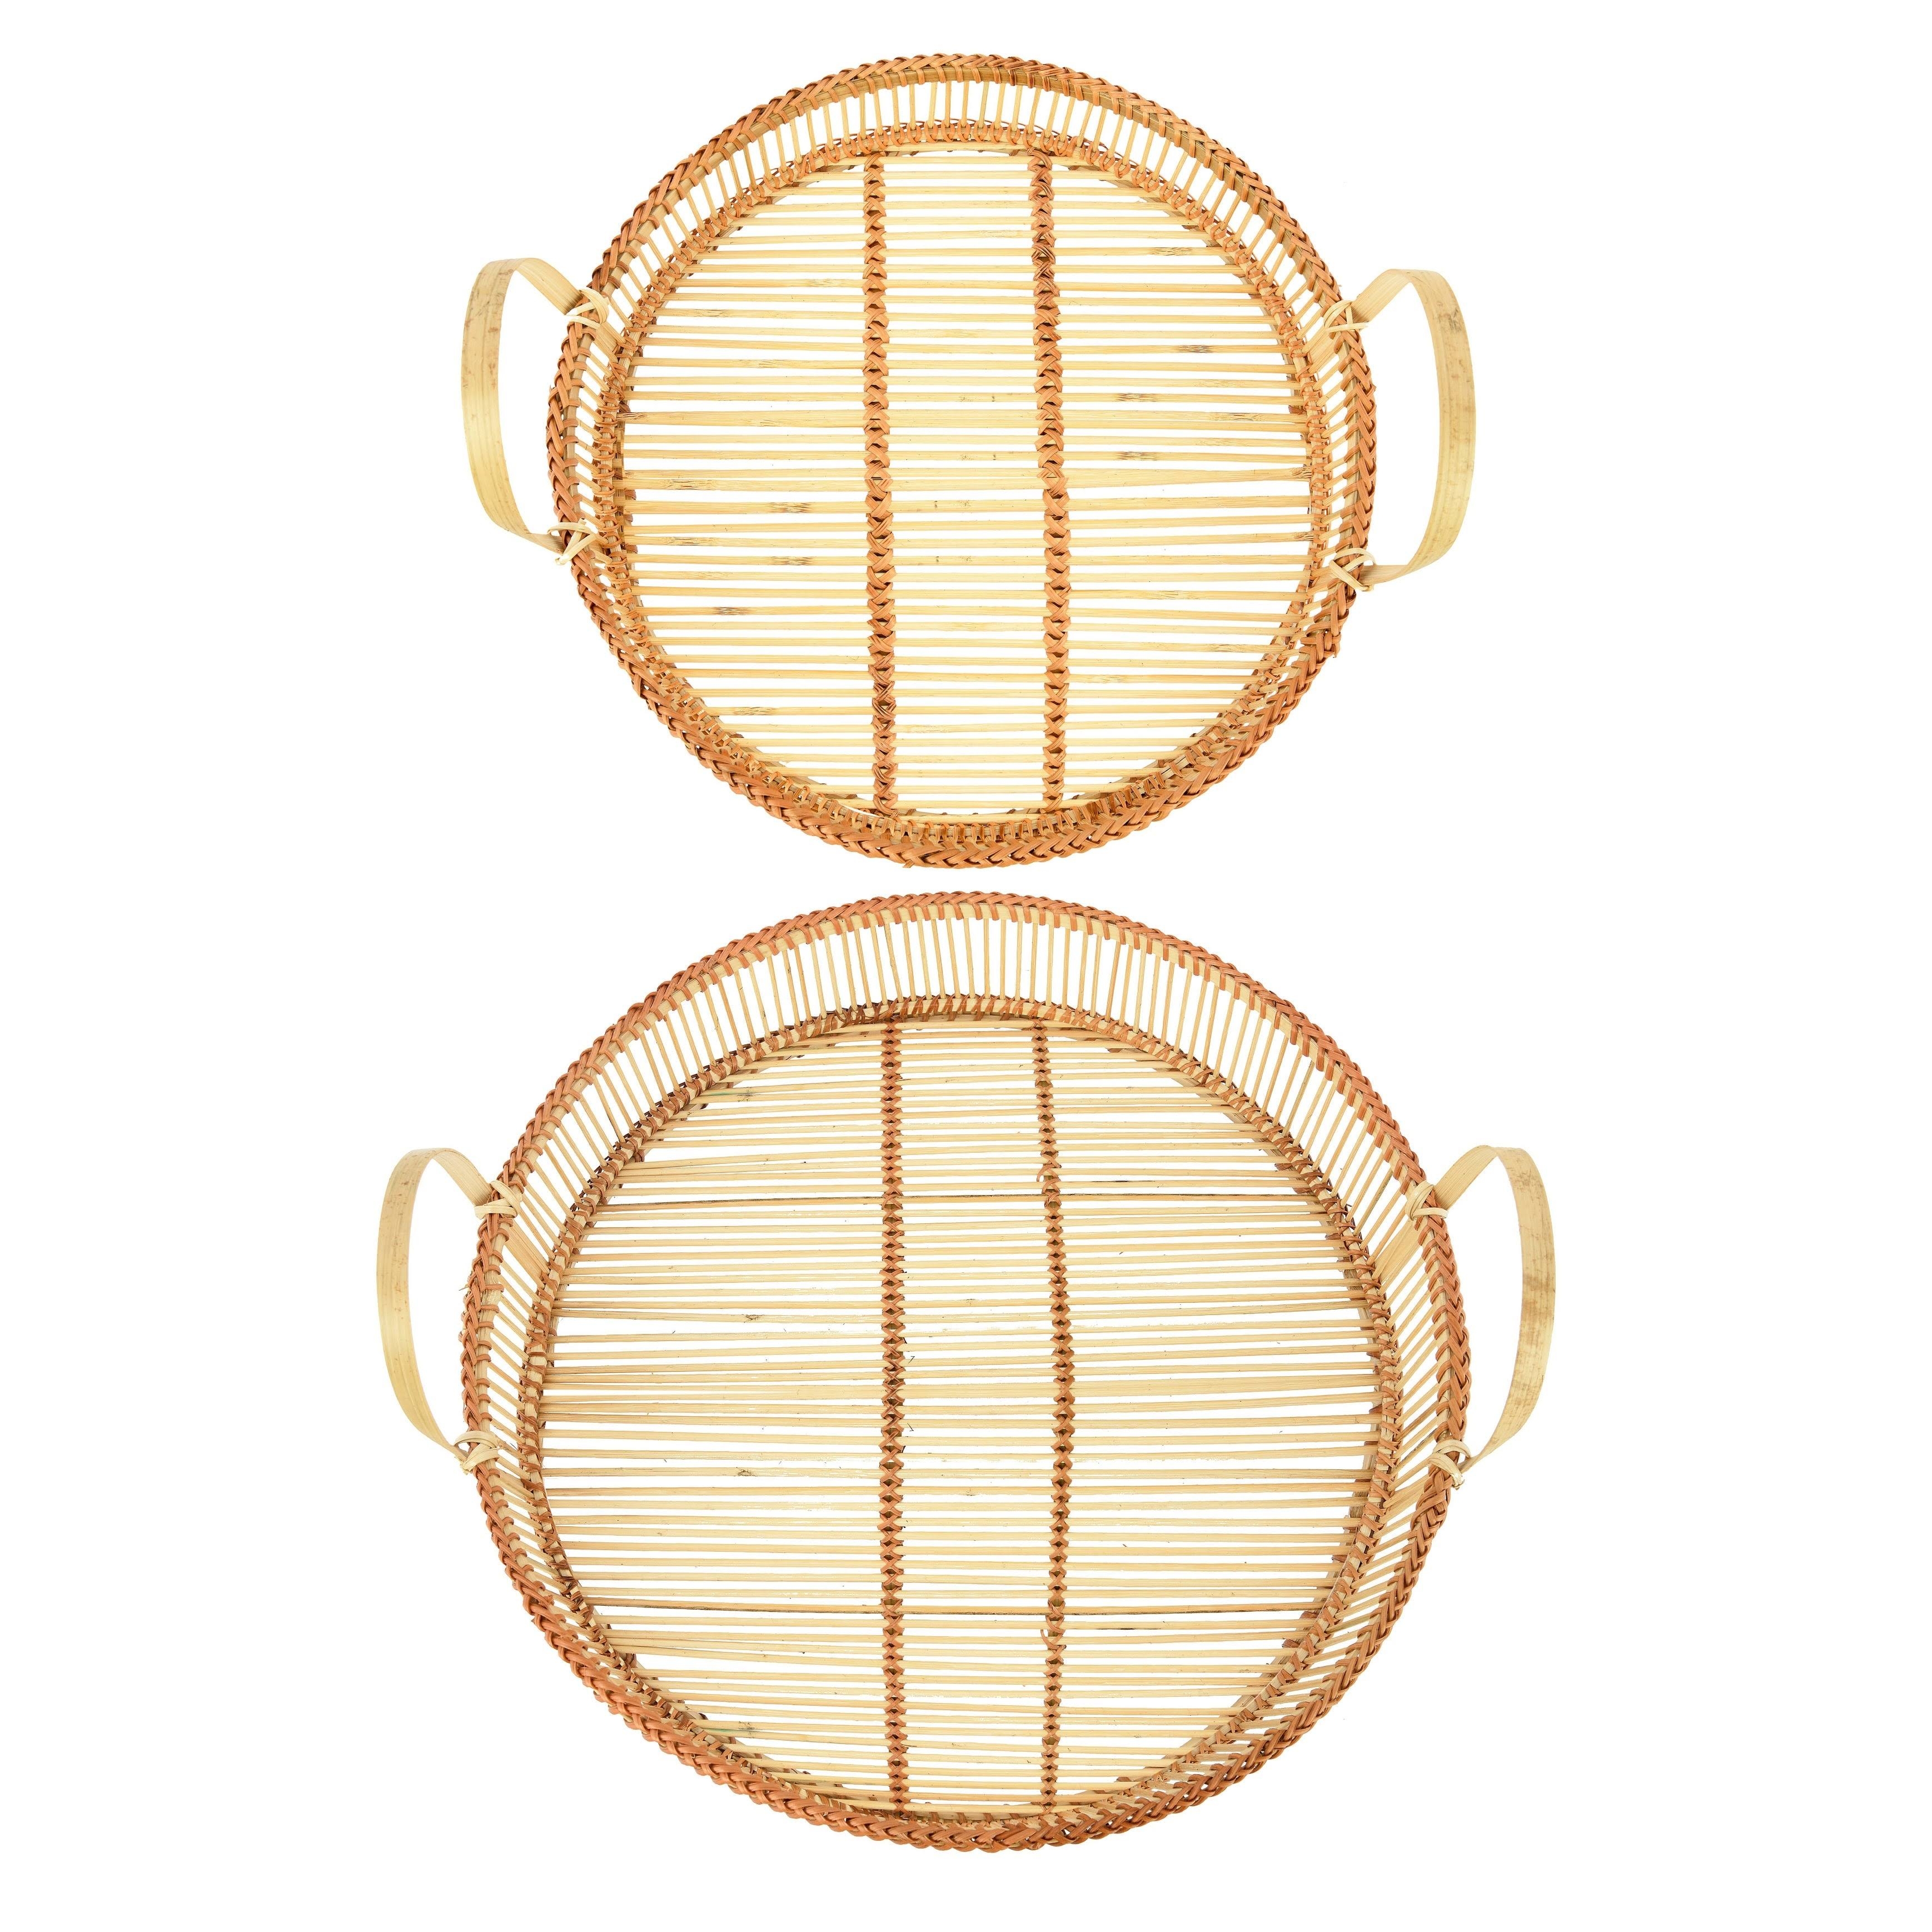 Decorative Round Bamboo Trays, Set of 2 - Image 3